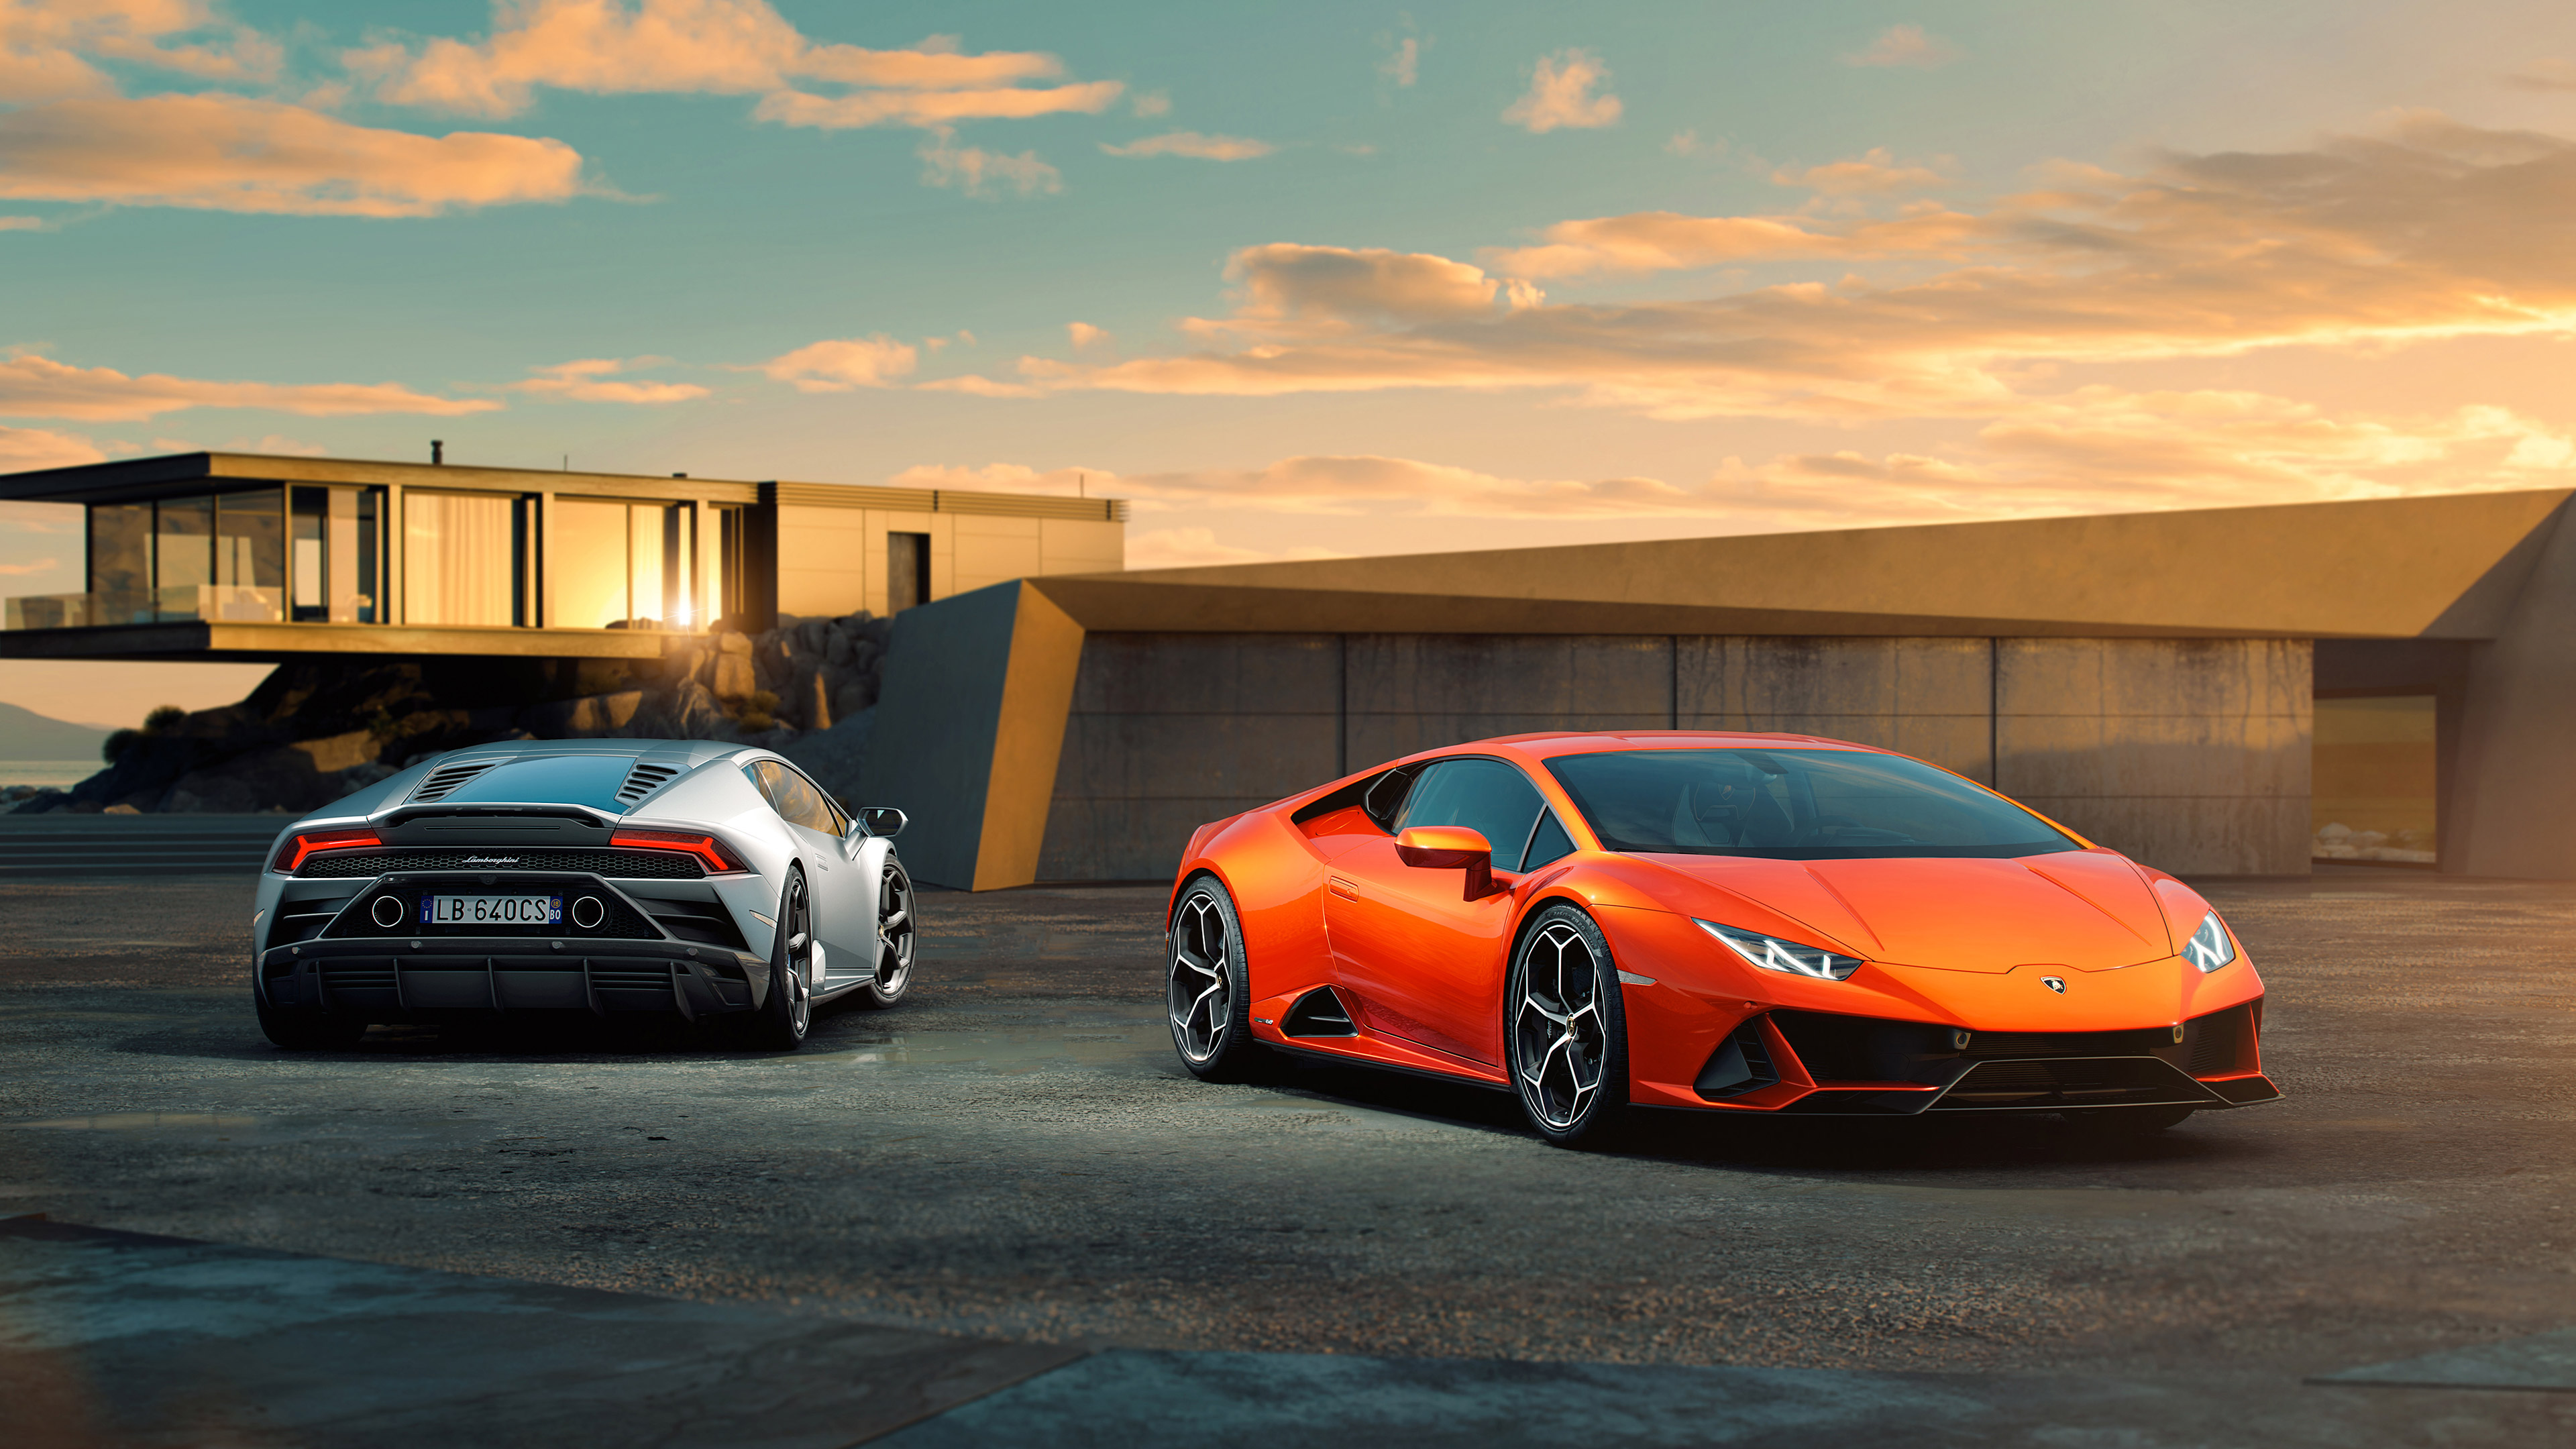 Descarga gratuita de fondo de pantalla para móvil de Lamborghini, Vehículos, Lamborghini Huracán Evo.